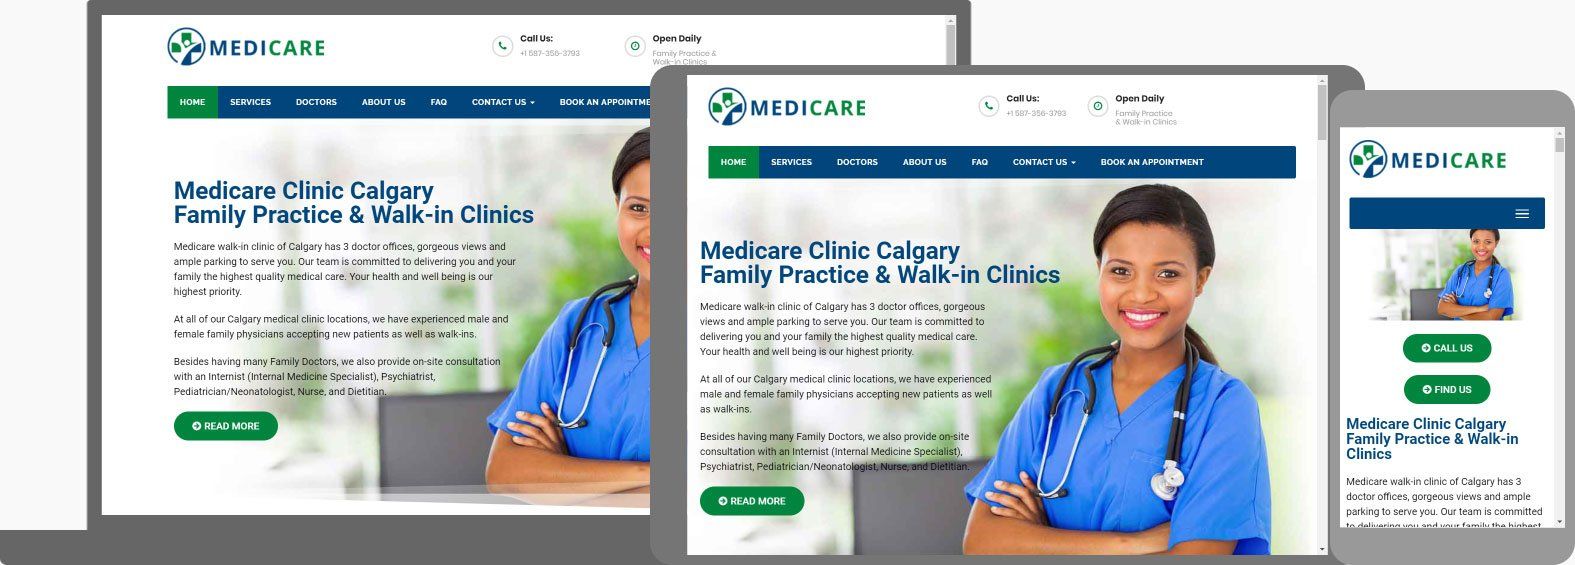 Medical Website Design - Medicare Clinic